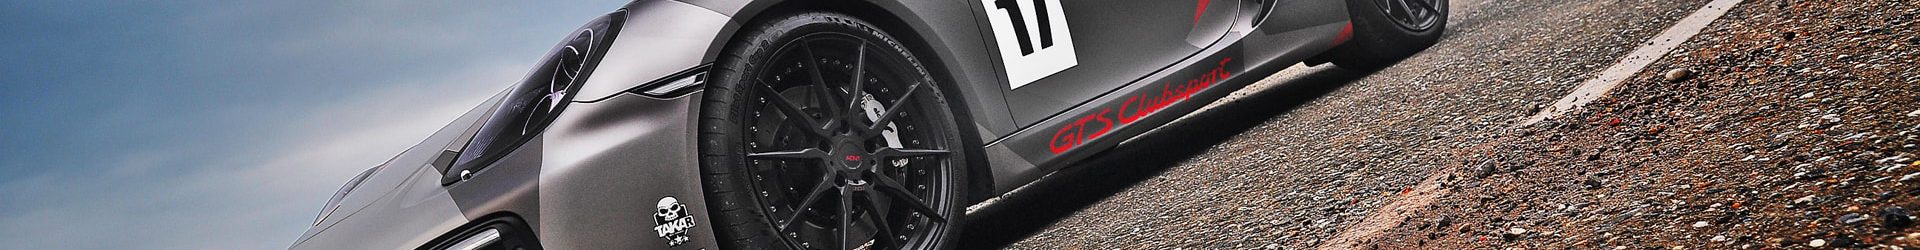 –天降奇駒–  Audi MK3 TT 鋒芒銳利 開箱拍攝